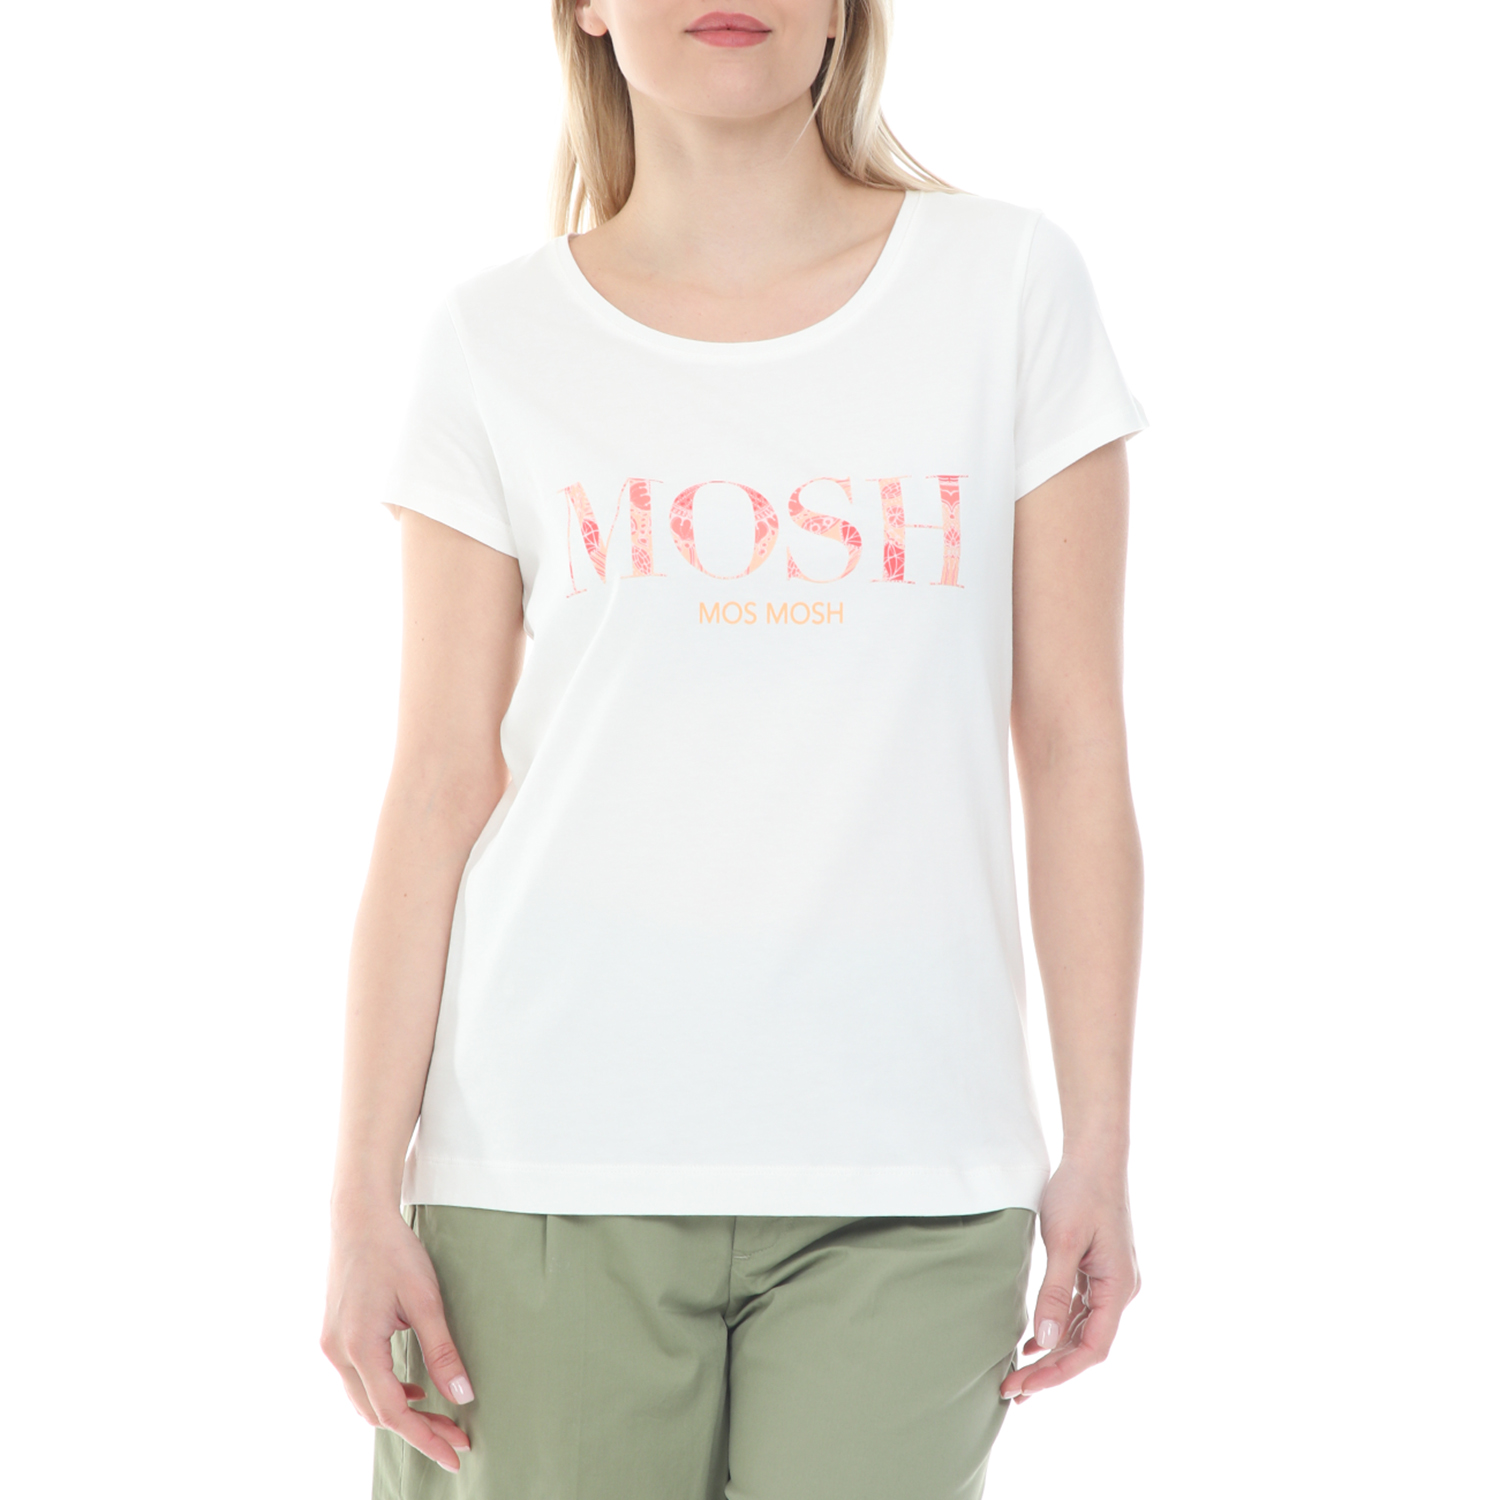 Γυναικεία/Ρούχα/Μπλούζες/Κοντομάνικες MOS MOSH - Γυναικεία μπλούζα MOS MOSH Arden Logo Vissa λευκή